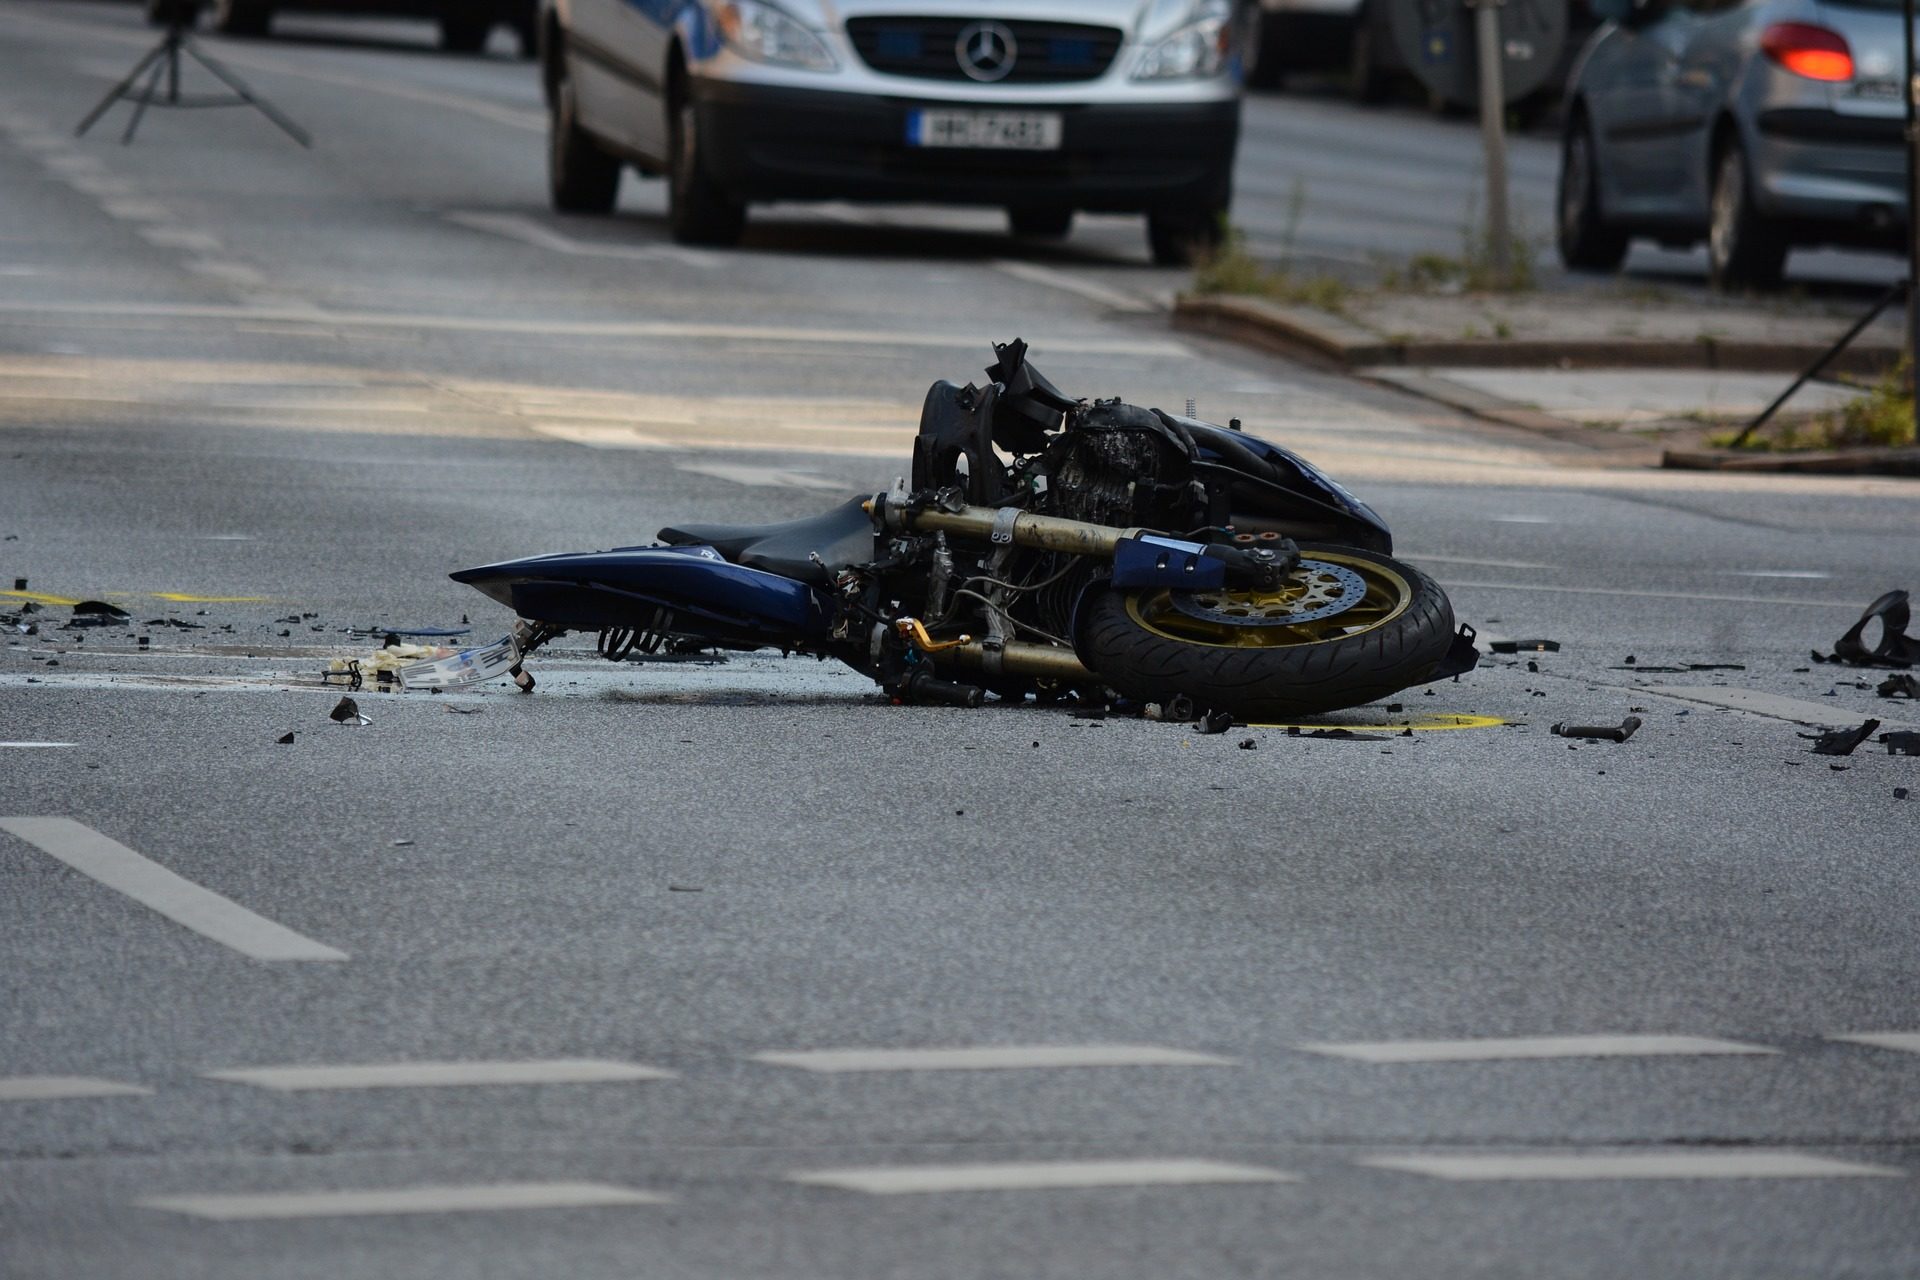 Accidentes que Involucran Motocicleta